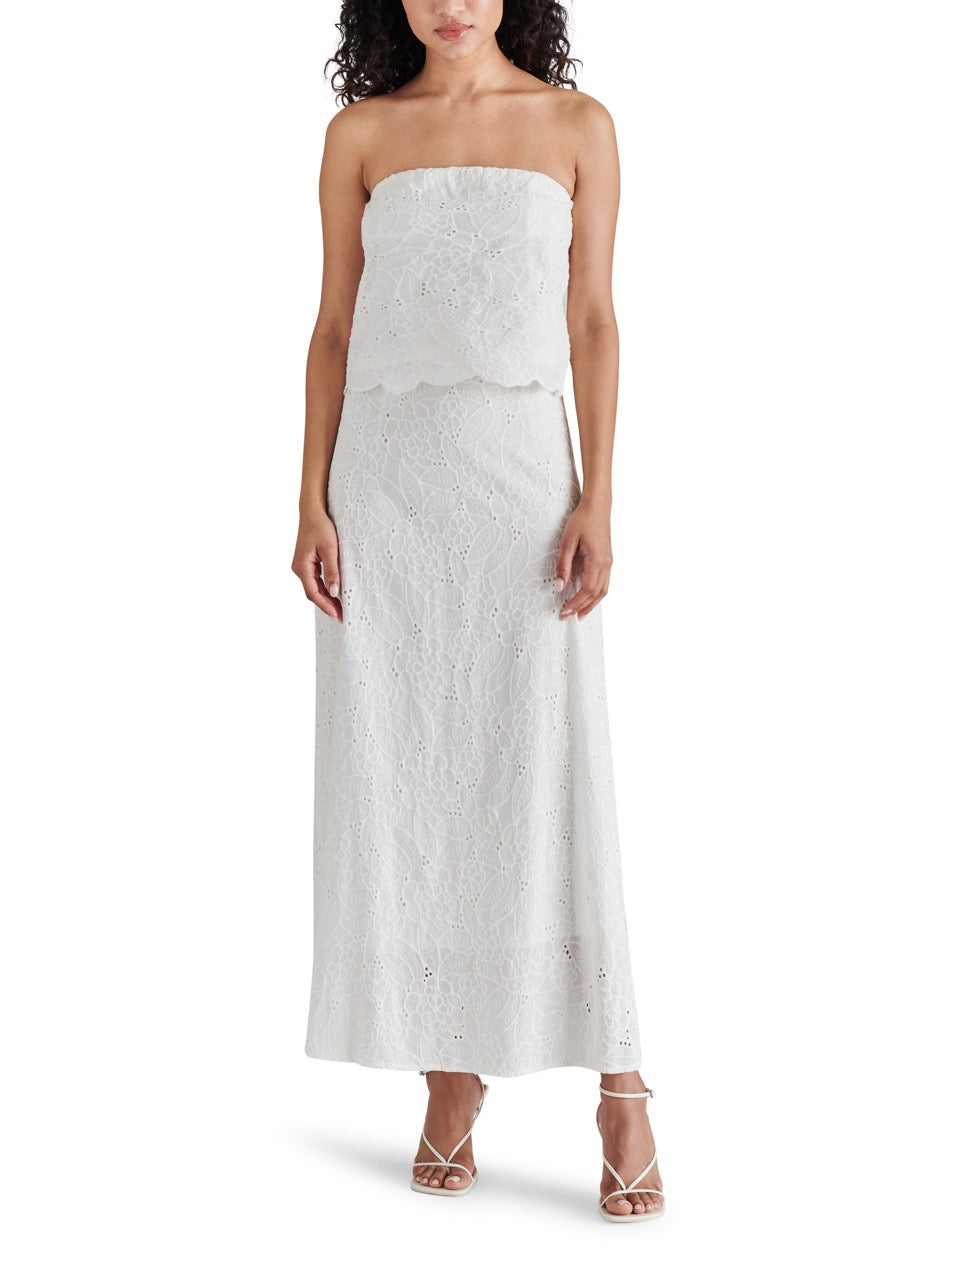 steve madden amalia skirt in white-full model view